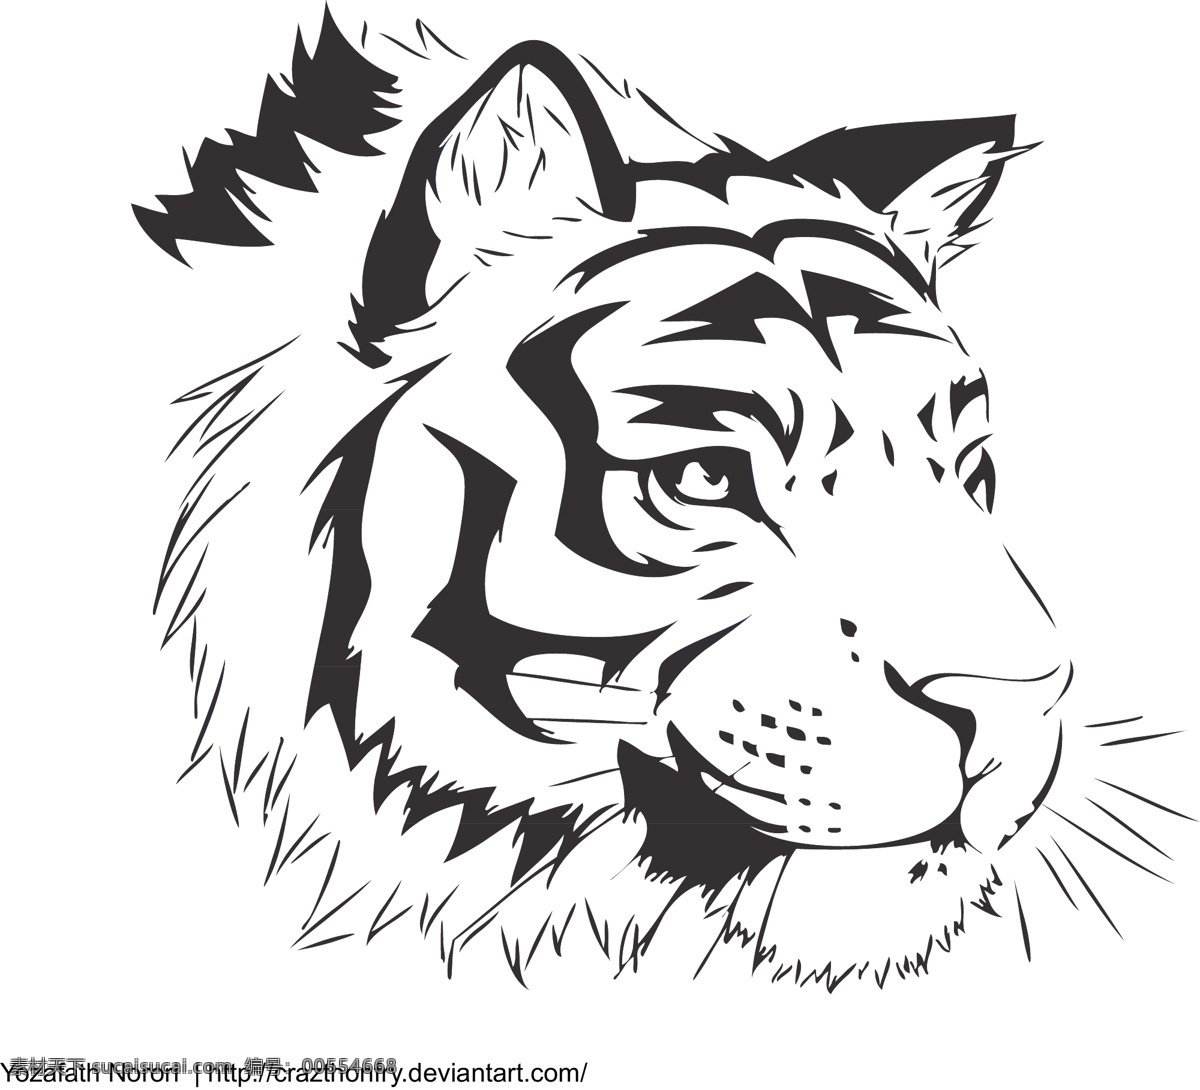 矢量 黑白 虎头 动物 卡通 老虎 模板 设计稿 手绘 素材元素 线描 图案 源文件 矢量图